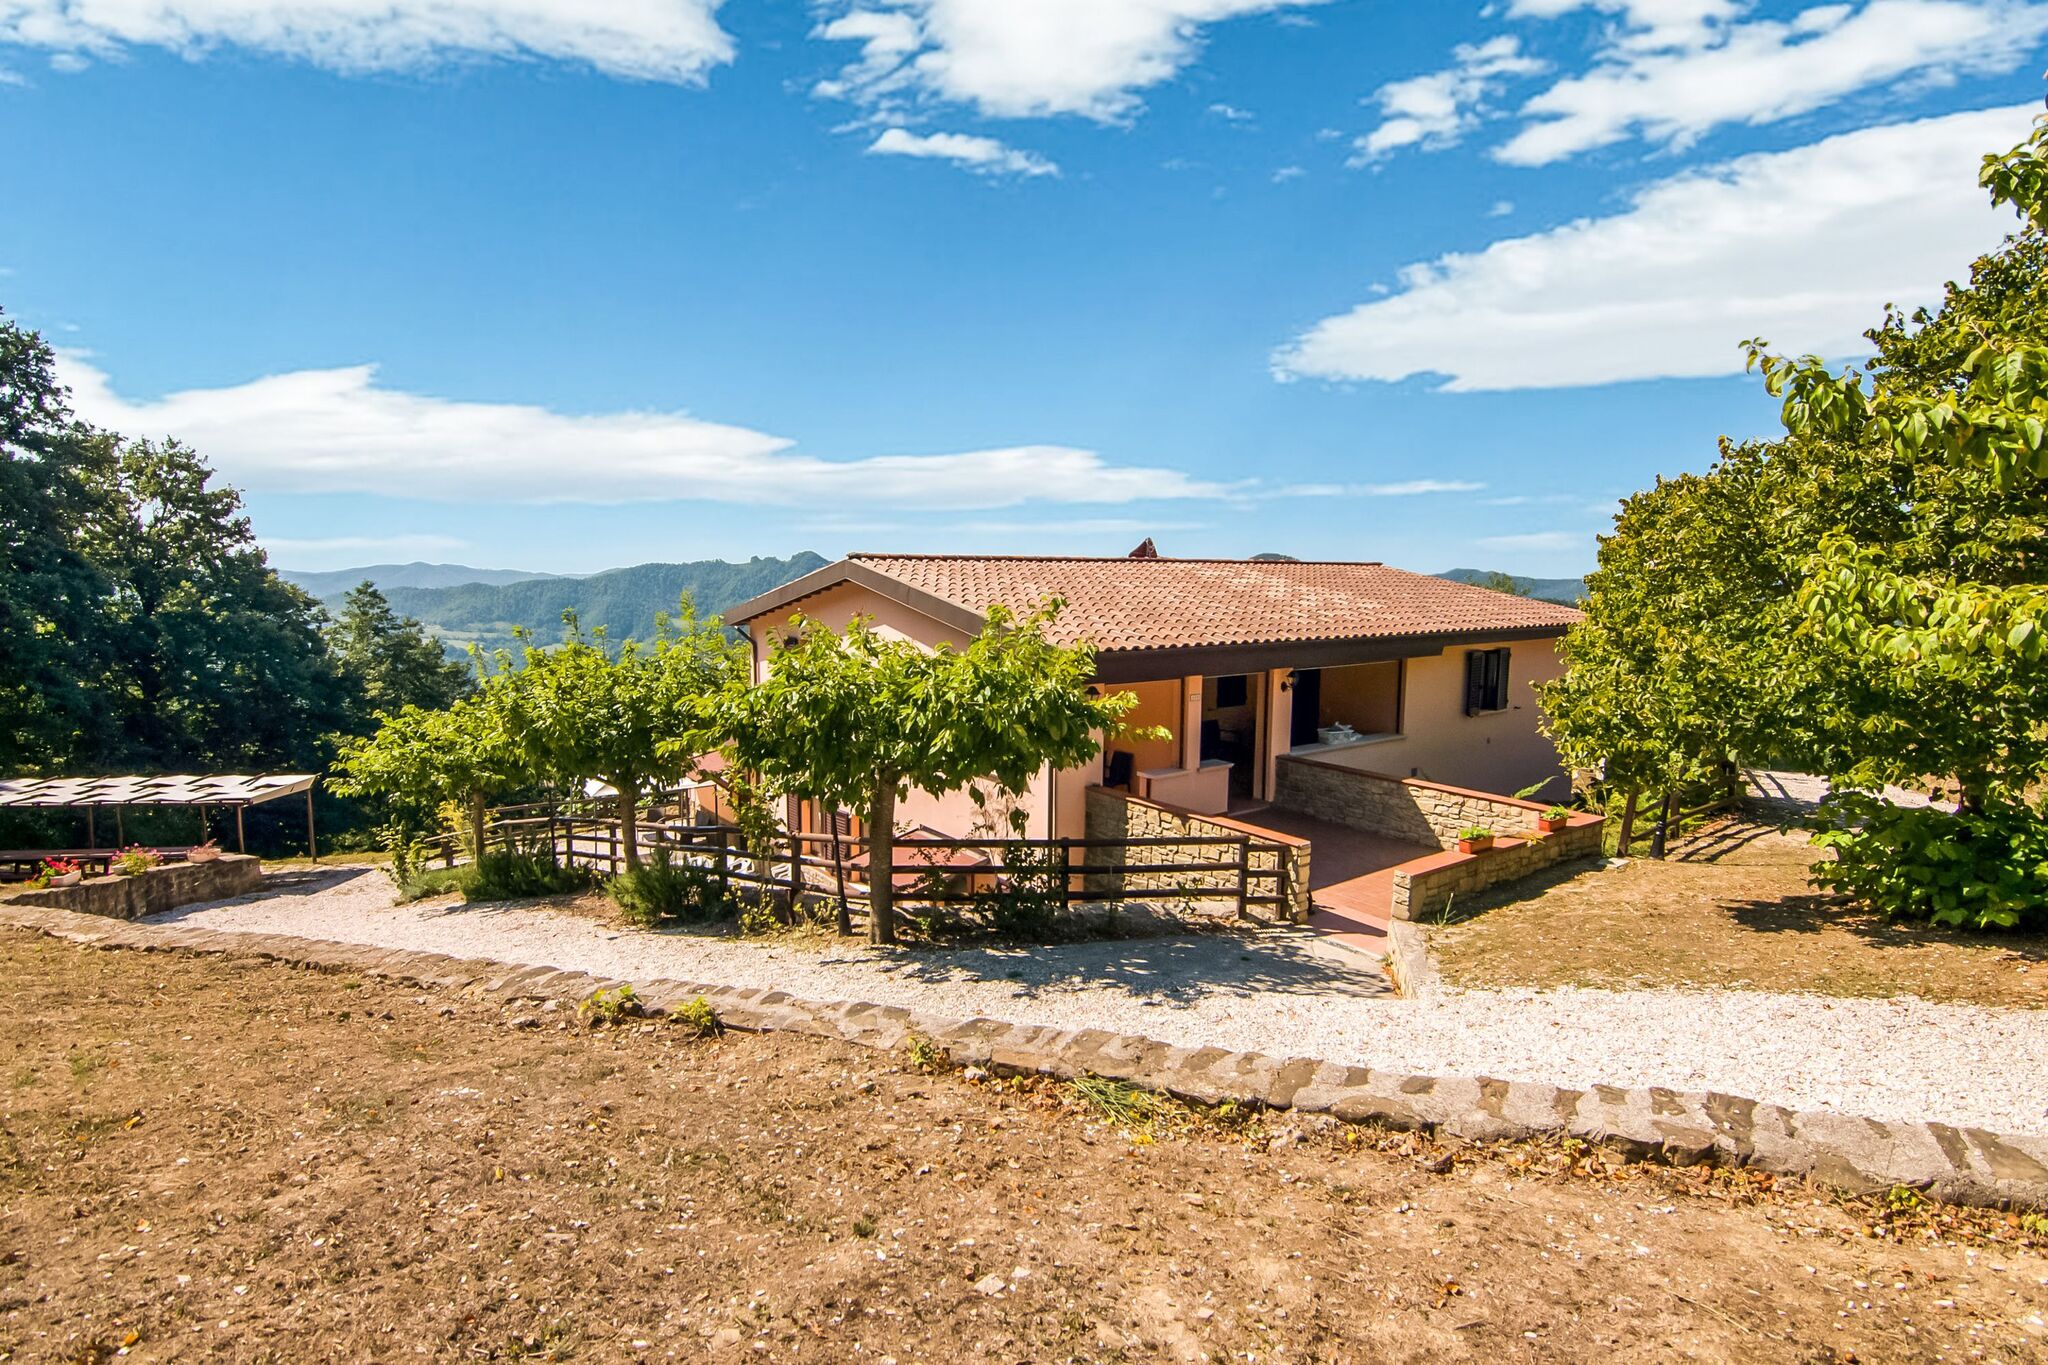 Das reizende Bauernhaus in Apecchio Marche mit privater Terrasse